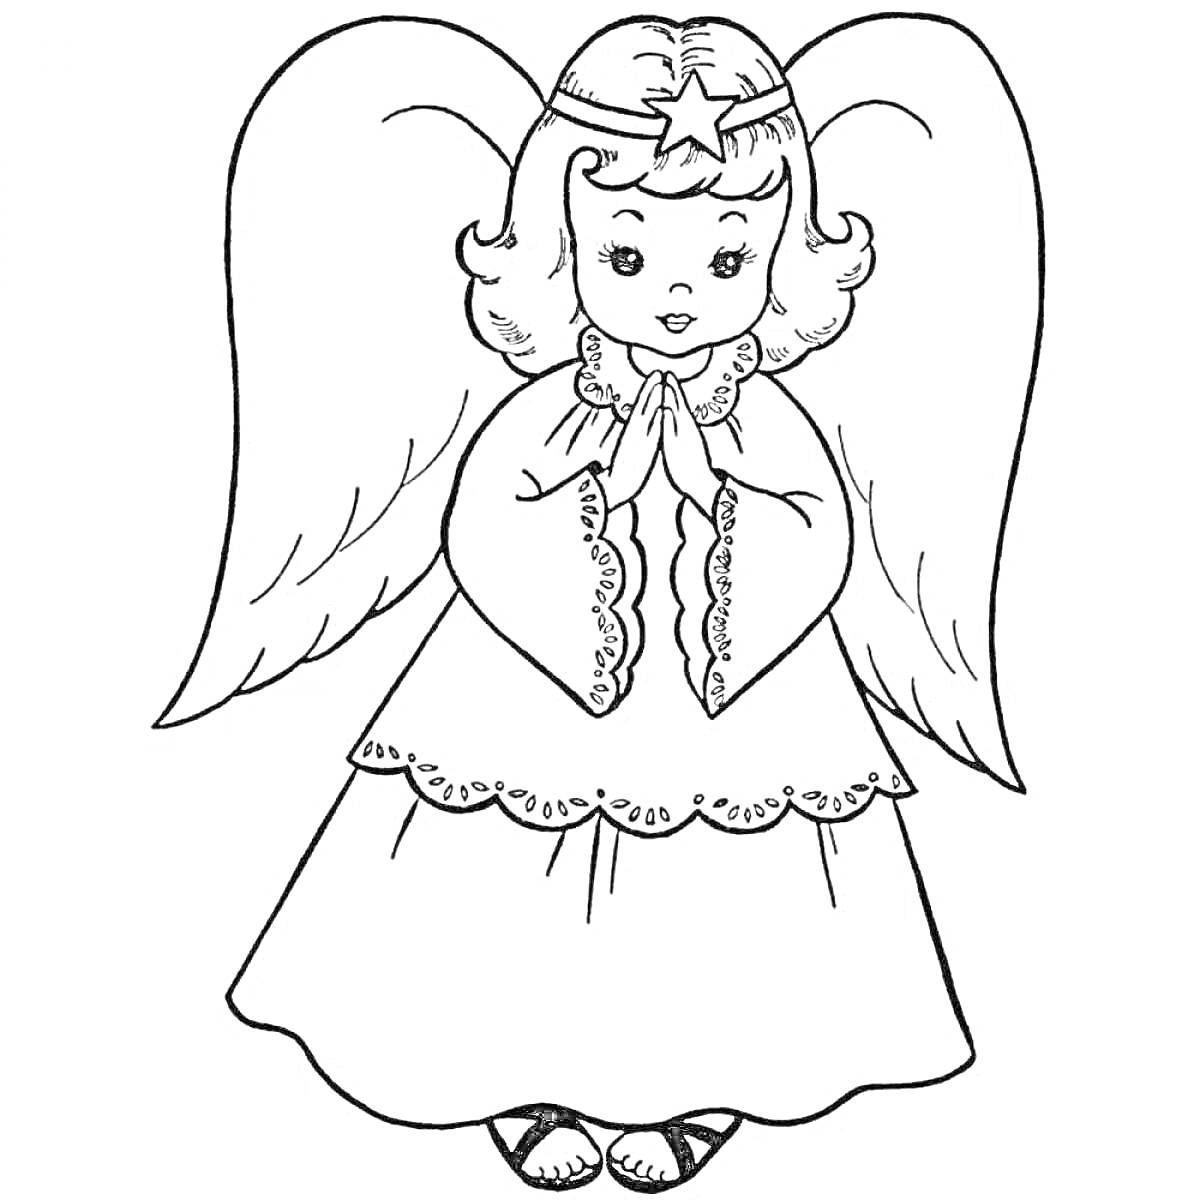 Раскраска Ангелочек с крыльями в длинном платье и со звездой на голове, стоящий с молитвенно сложенными руками